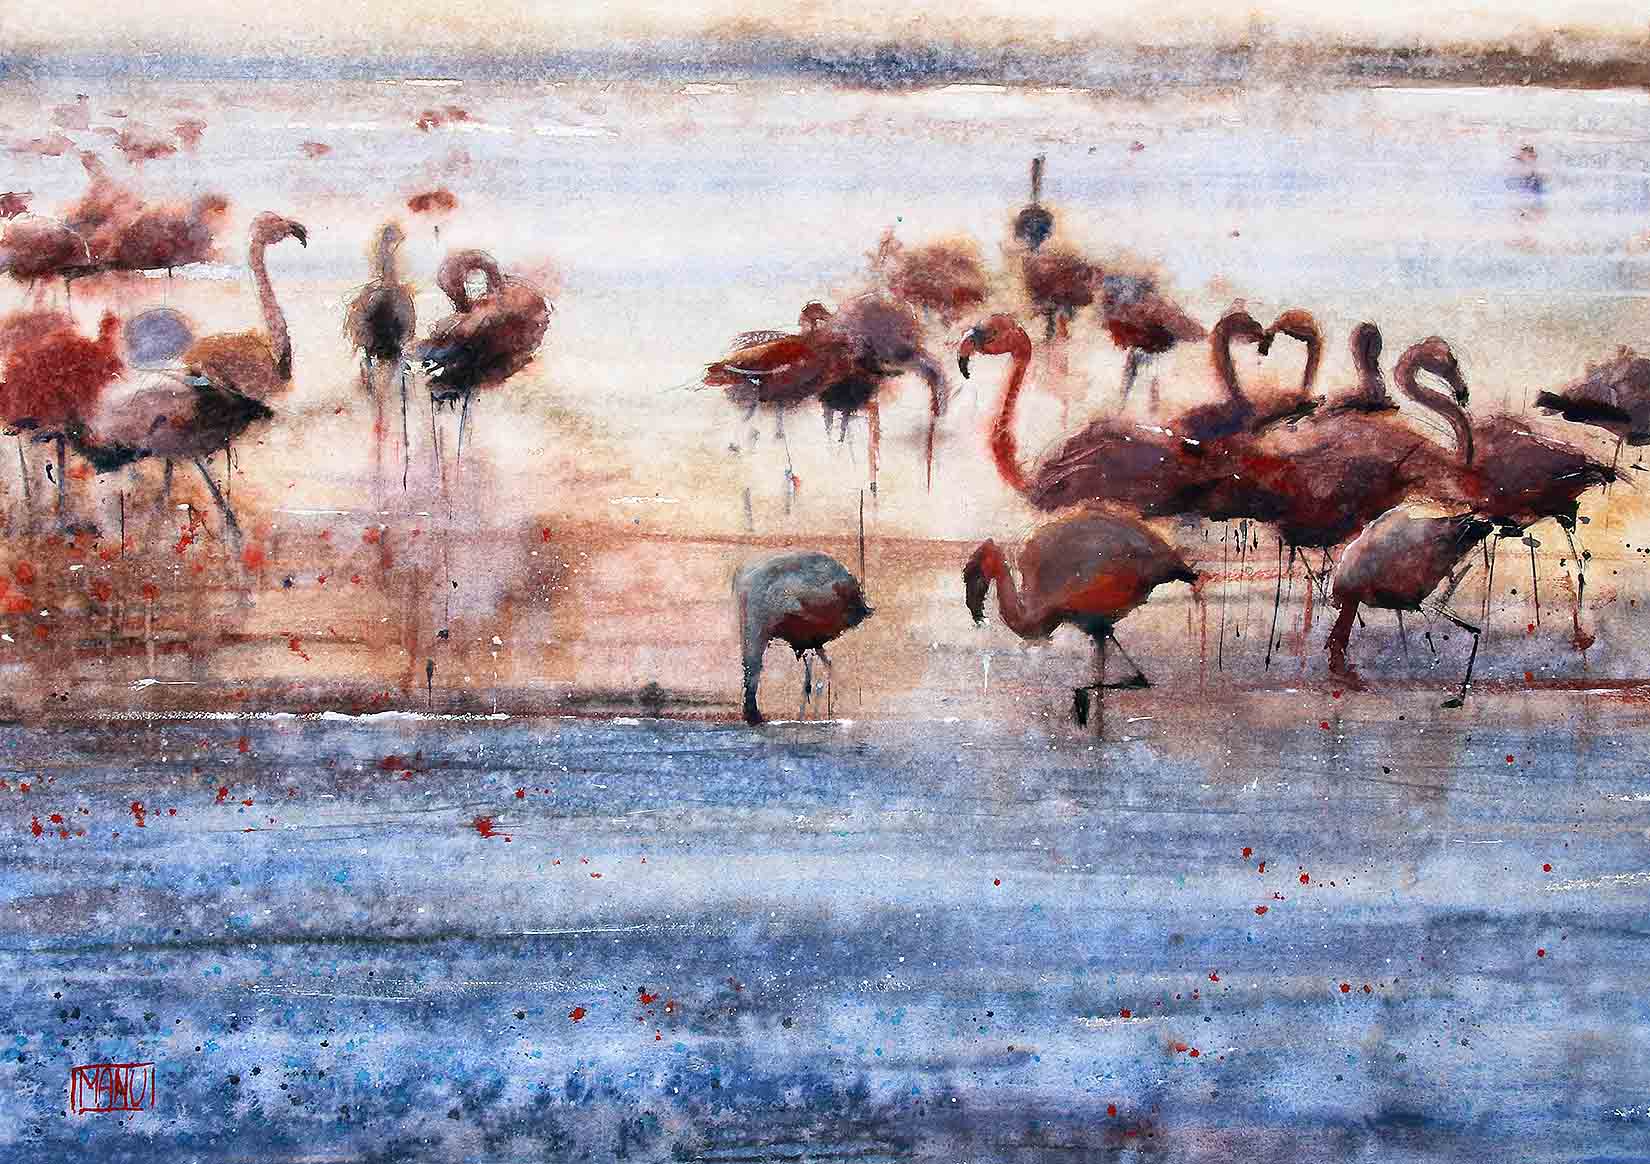 Fenicotteri nella laguna - Los Flamingos - Emmanuele Cammarano fine artist acquerello watercolor aquarelle